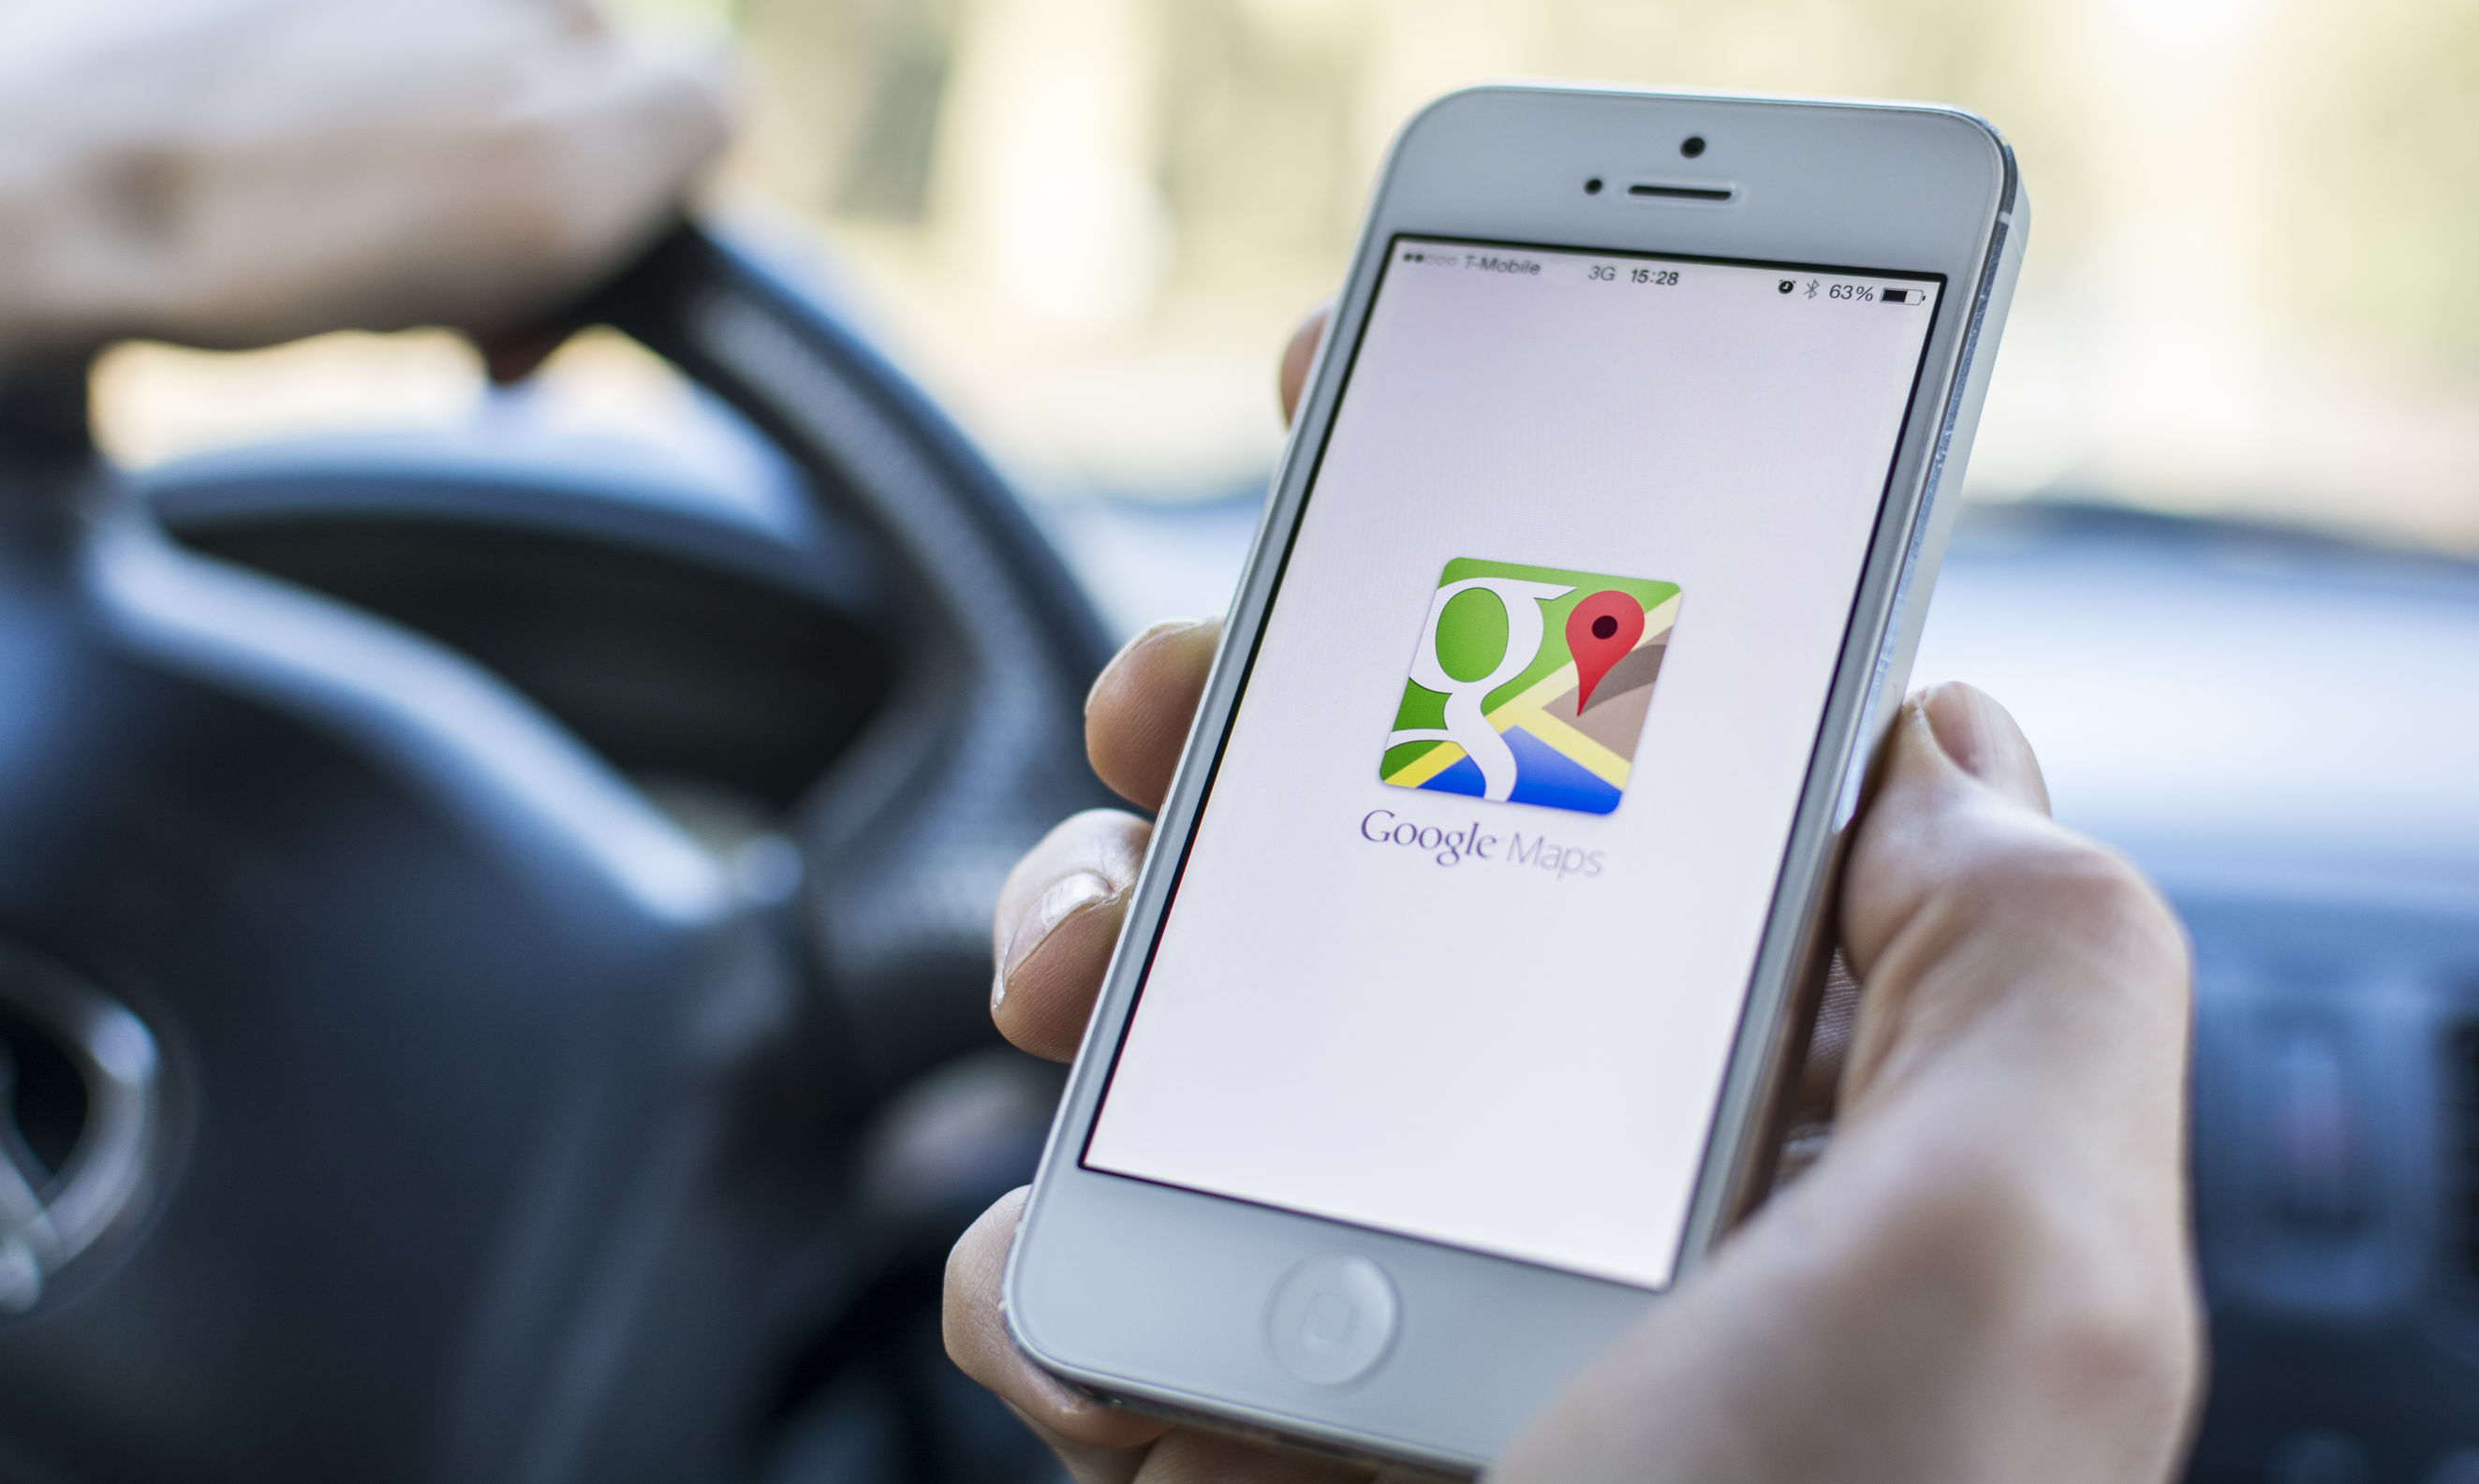 कार पार्किंग की लोकेशन बताएगा गूगल मैप!